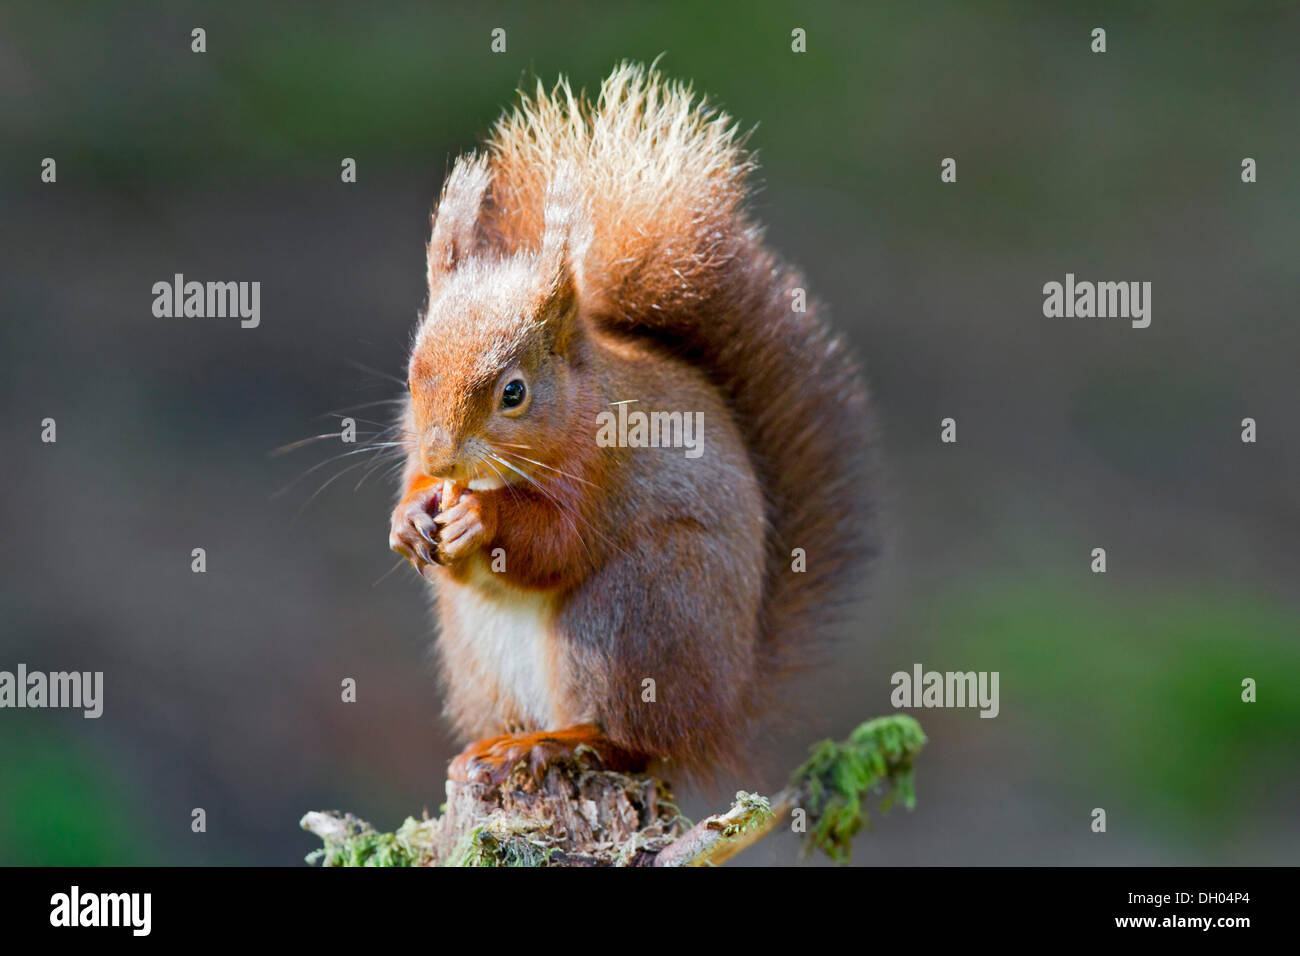 Red scoiattolo (Sciurus vulgaris), nord ovest Inghilterra, Regno Unito, Europa Foto Stock